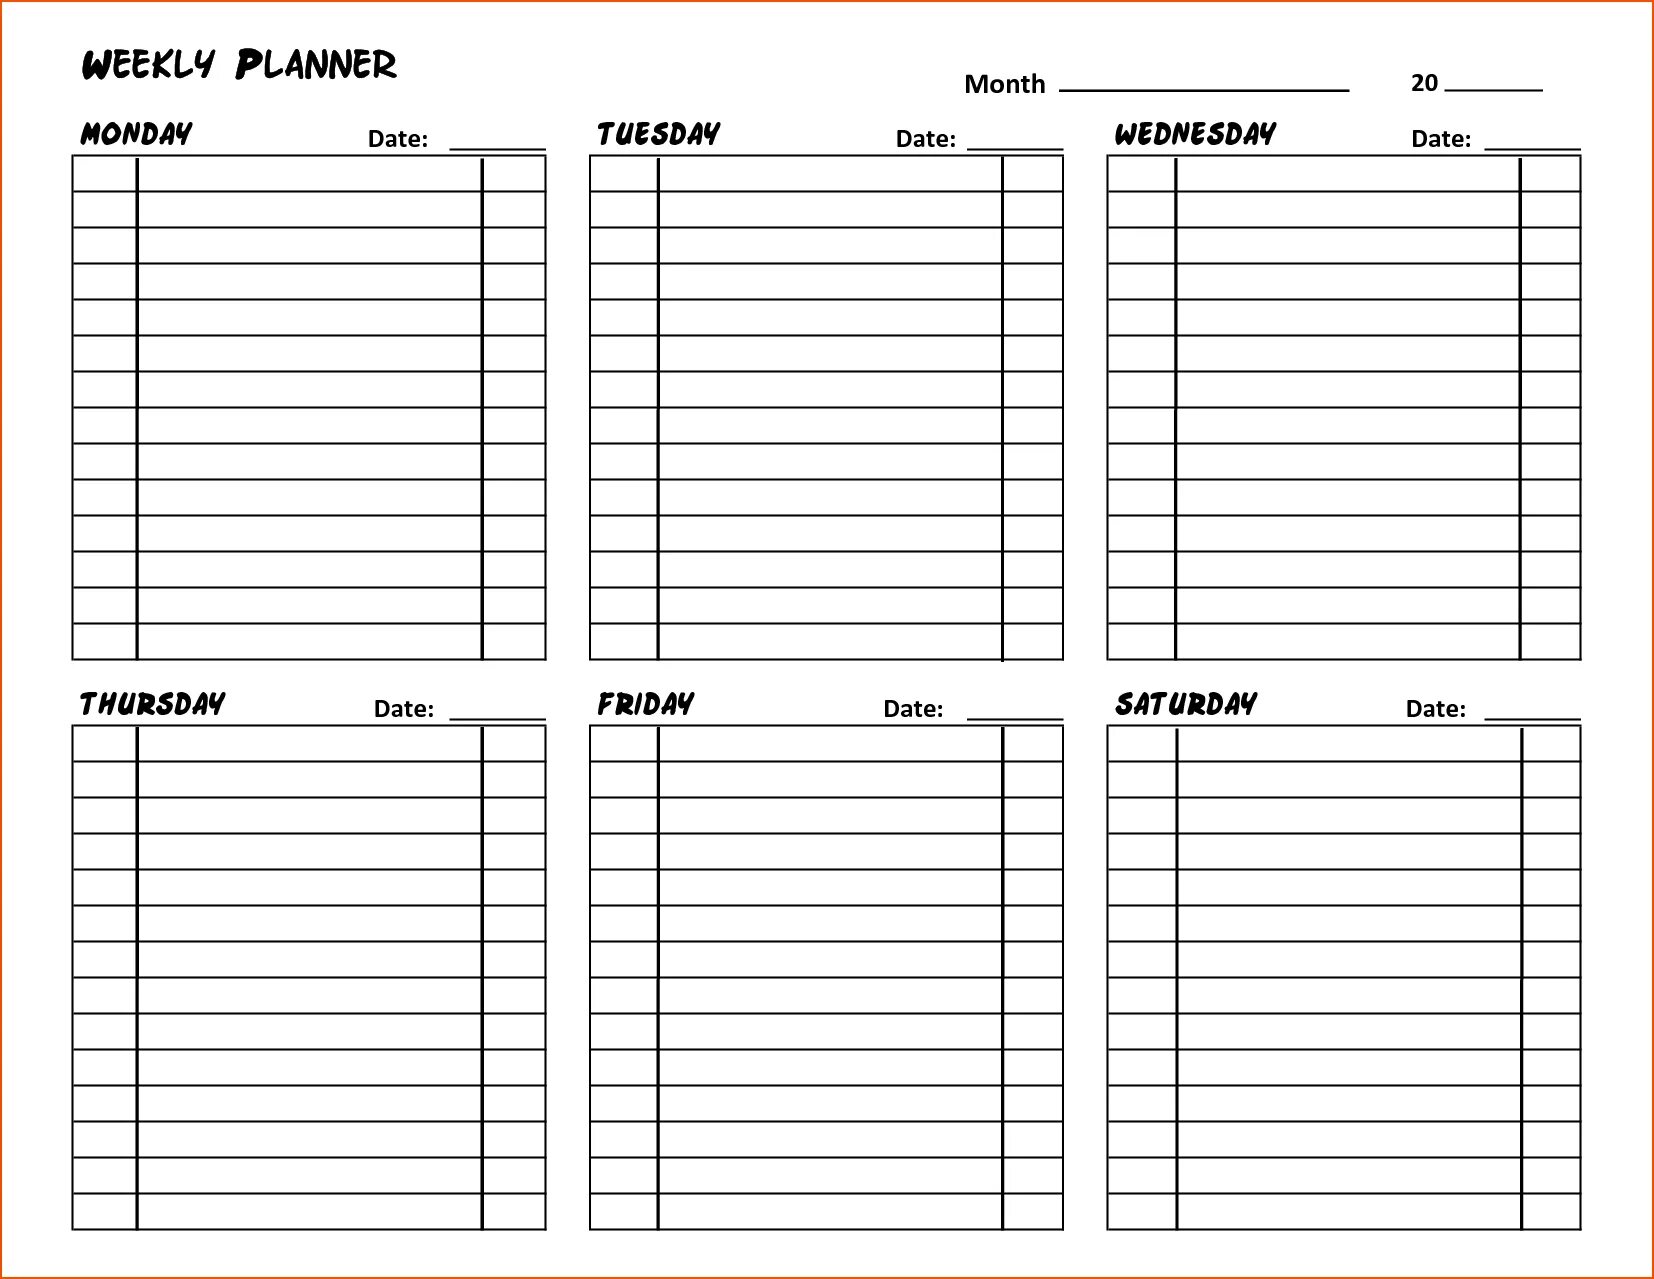 Weekly Planner шаблон для печати. Ежедневник планер шаблон в excel. Лист план на день. Недельный план. Готовый план дня